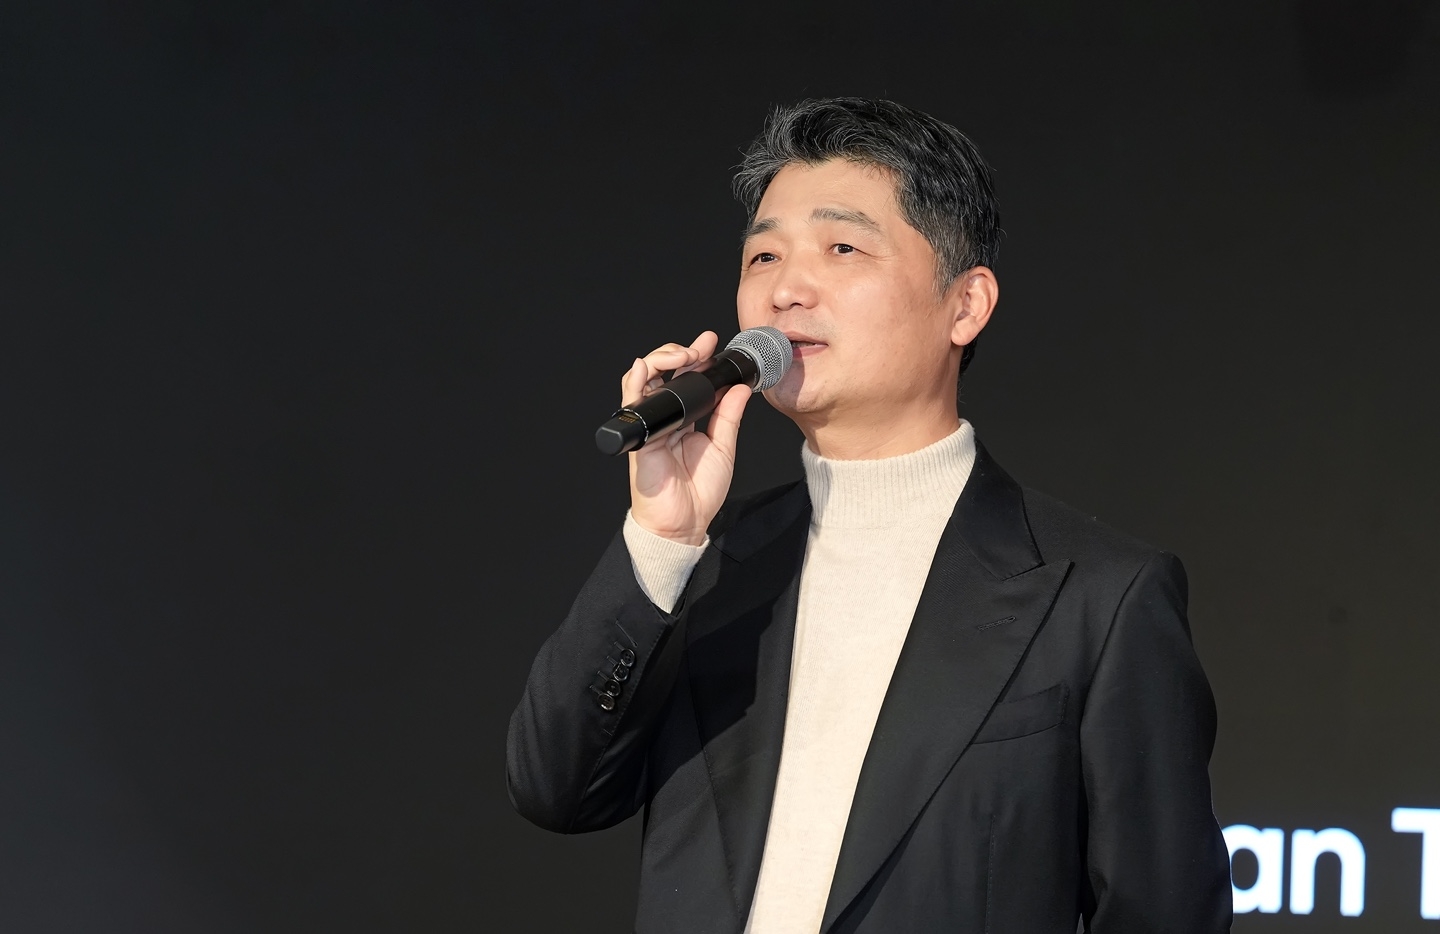 김범수 카카오 창업자가 11일 카카오 판교 아지트에서 열린 임직원 간담회 '브라이언톡'에 참석해 발언하고 있다. / 사진제공=카카오 